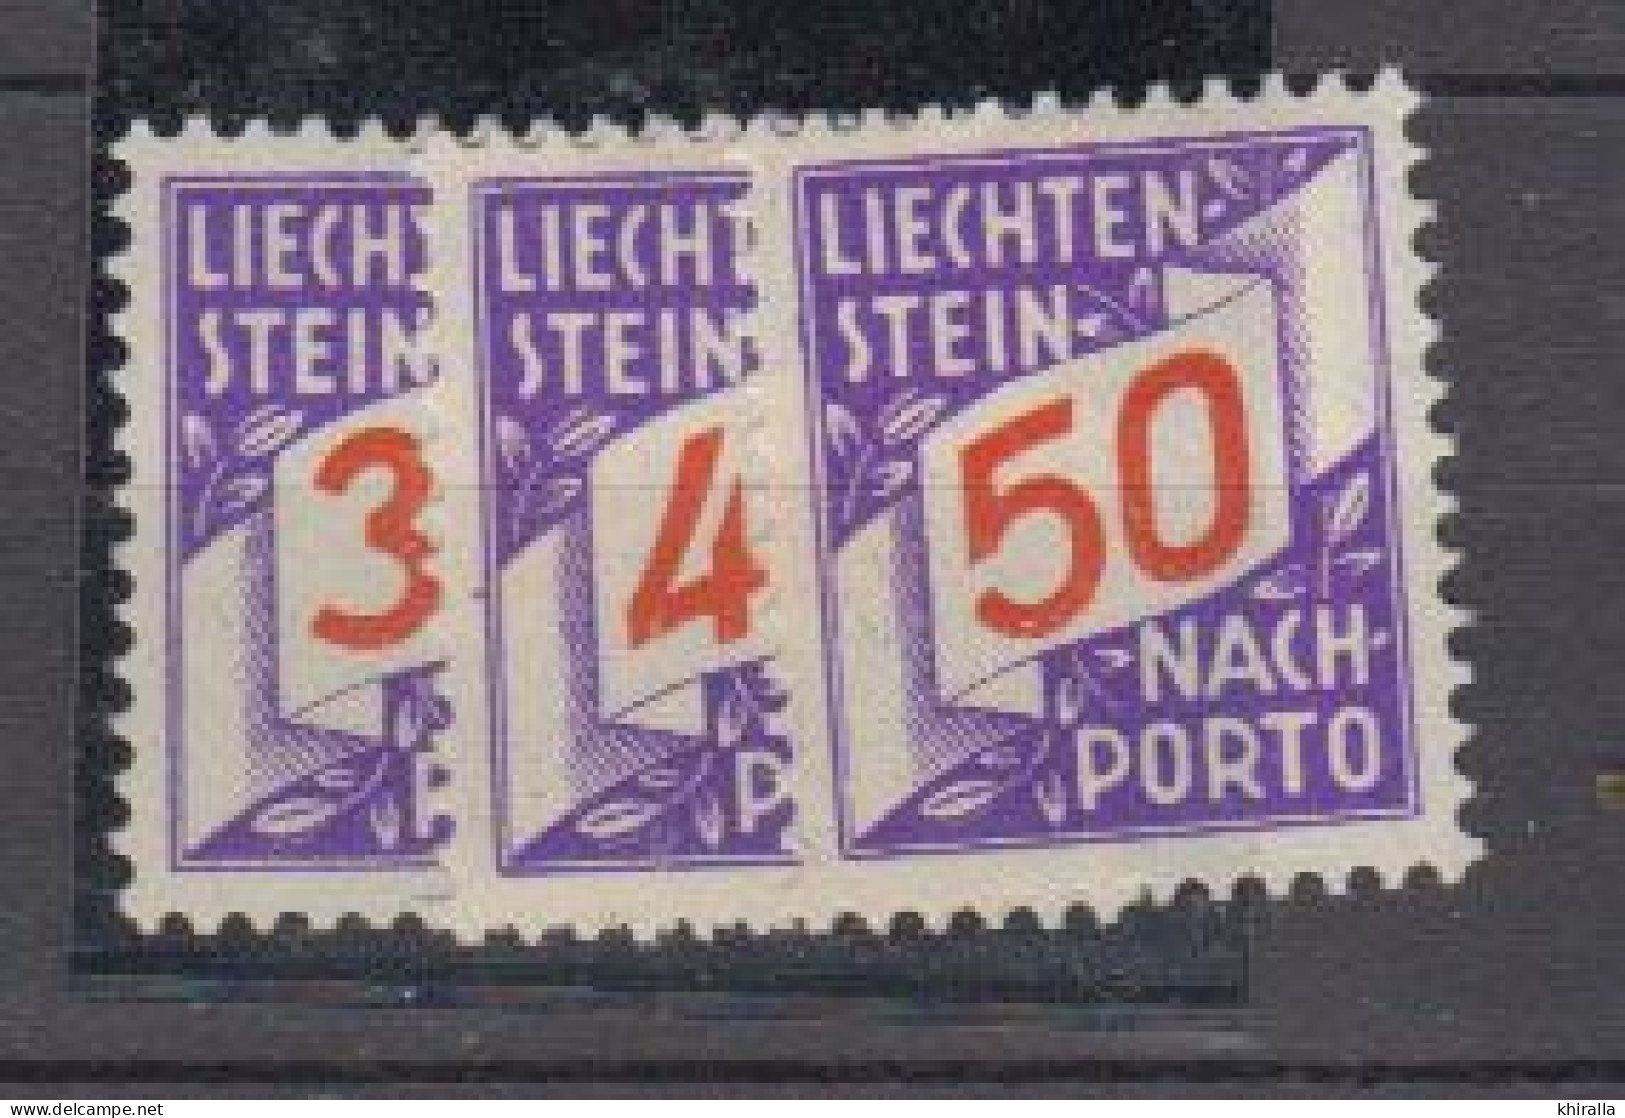 LIECHTENSTEIN   1928    Taxe     N°  18  / 20    ( Nehf Sans Charniére )      COTE   81 € 00        ( D 393 ) - Postage Due